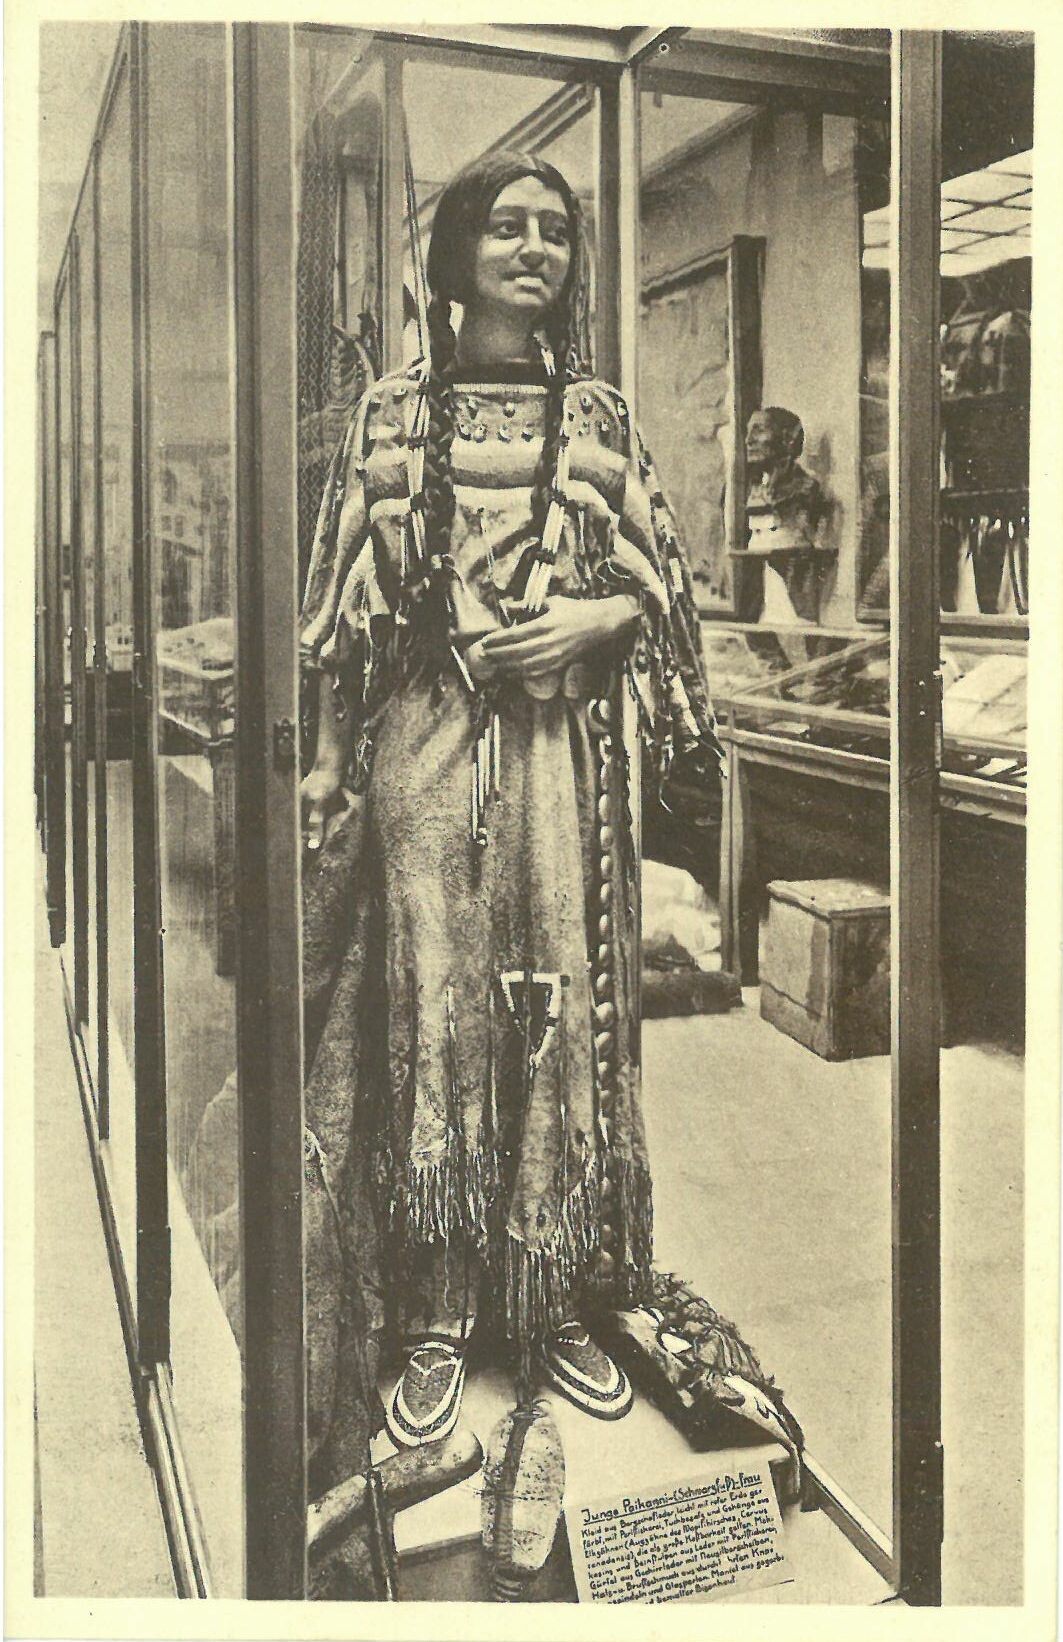 Gestalt einer jungen Schwarzfuß-Indianerin in Vitrine; schwarz/weiß, mit Patty Frank Signum (Karl-May-Museum gGmbH RR-R)